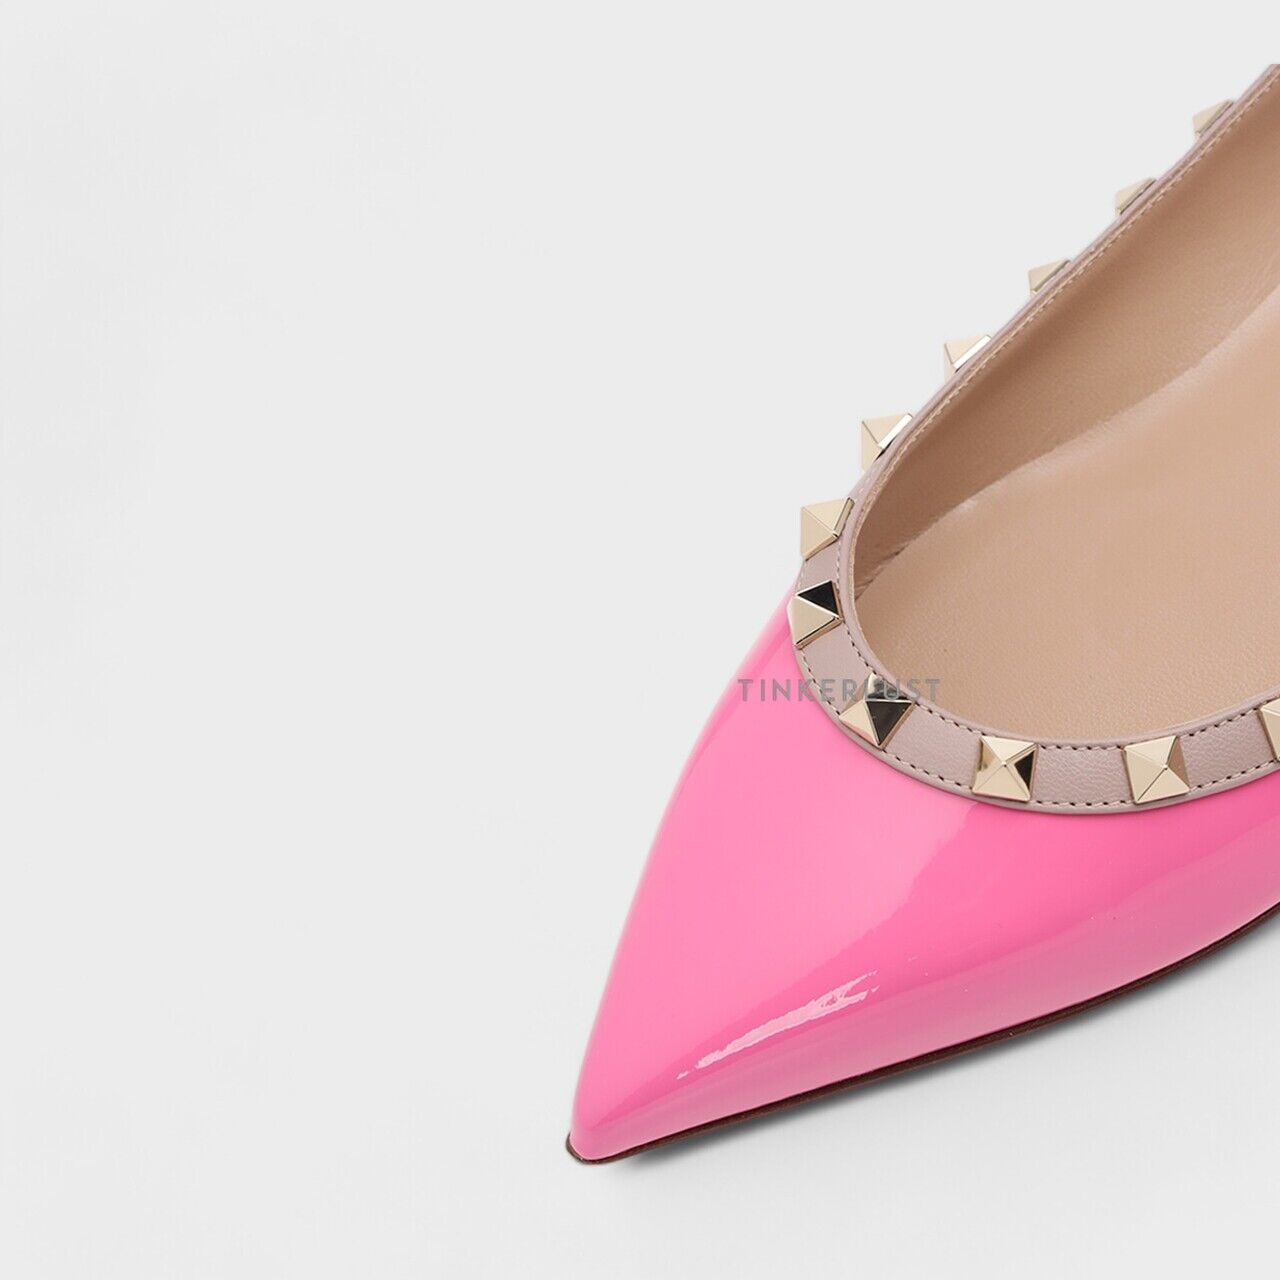 Valentino Rockstud Ballerina in Feminine Pink Patent Flats